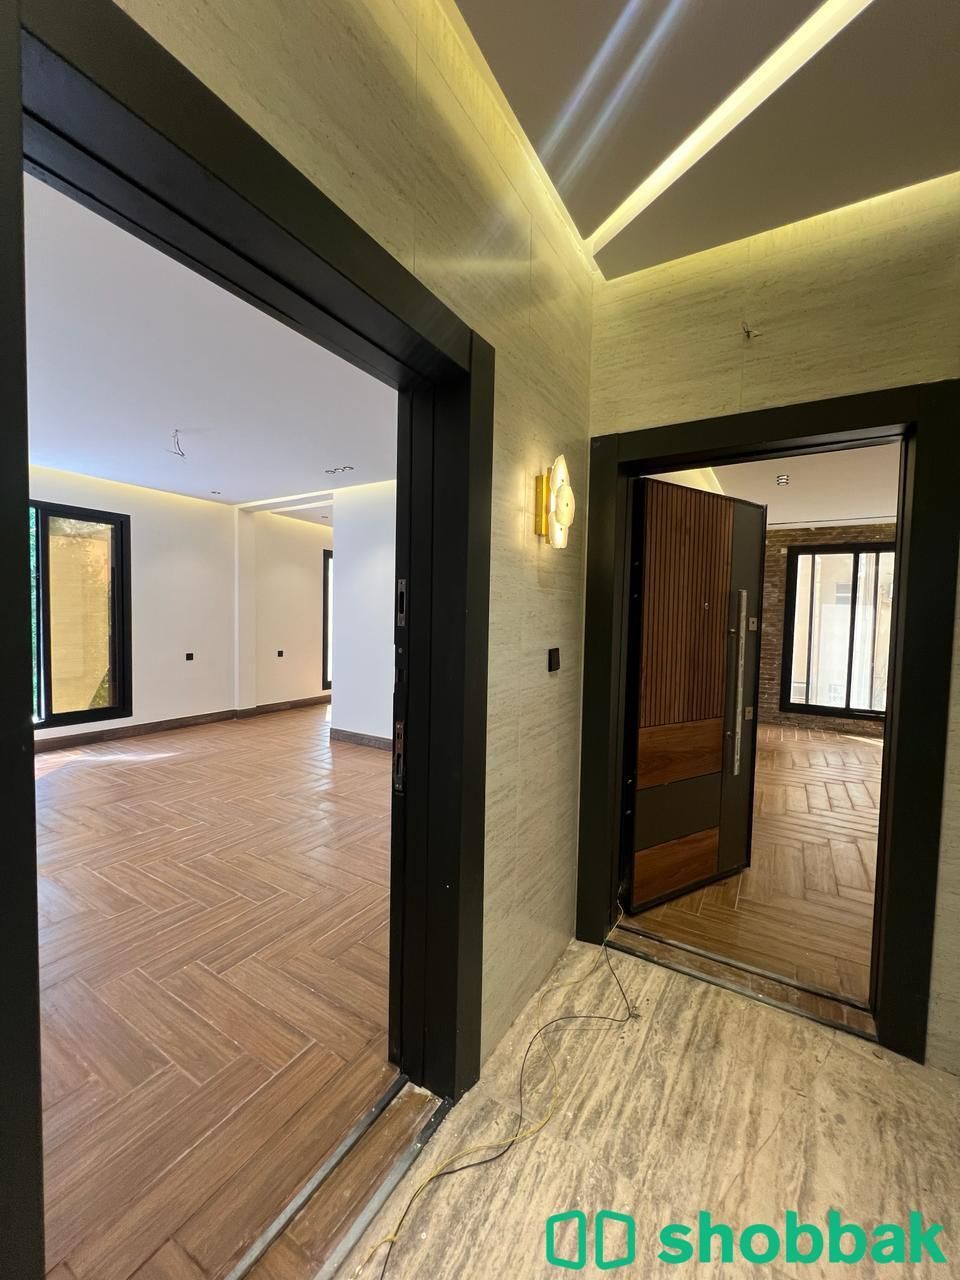 شقة 5 غرف بحي الروضة أمامية بمدخلين جديدة جاهزة للسكن تقبل البنك من المالك مباشرة  شباك السعودية